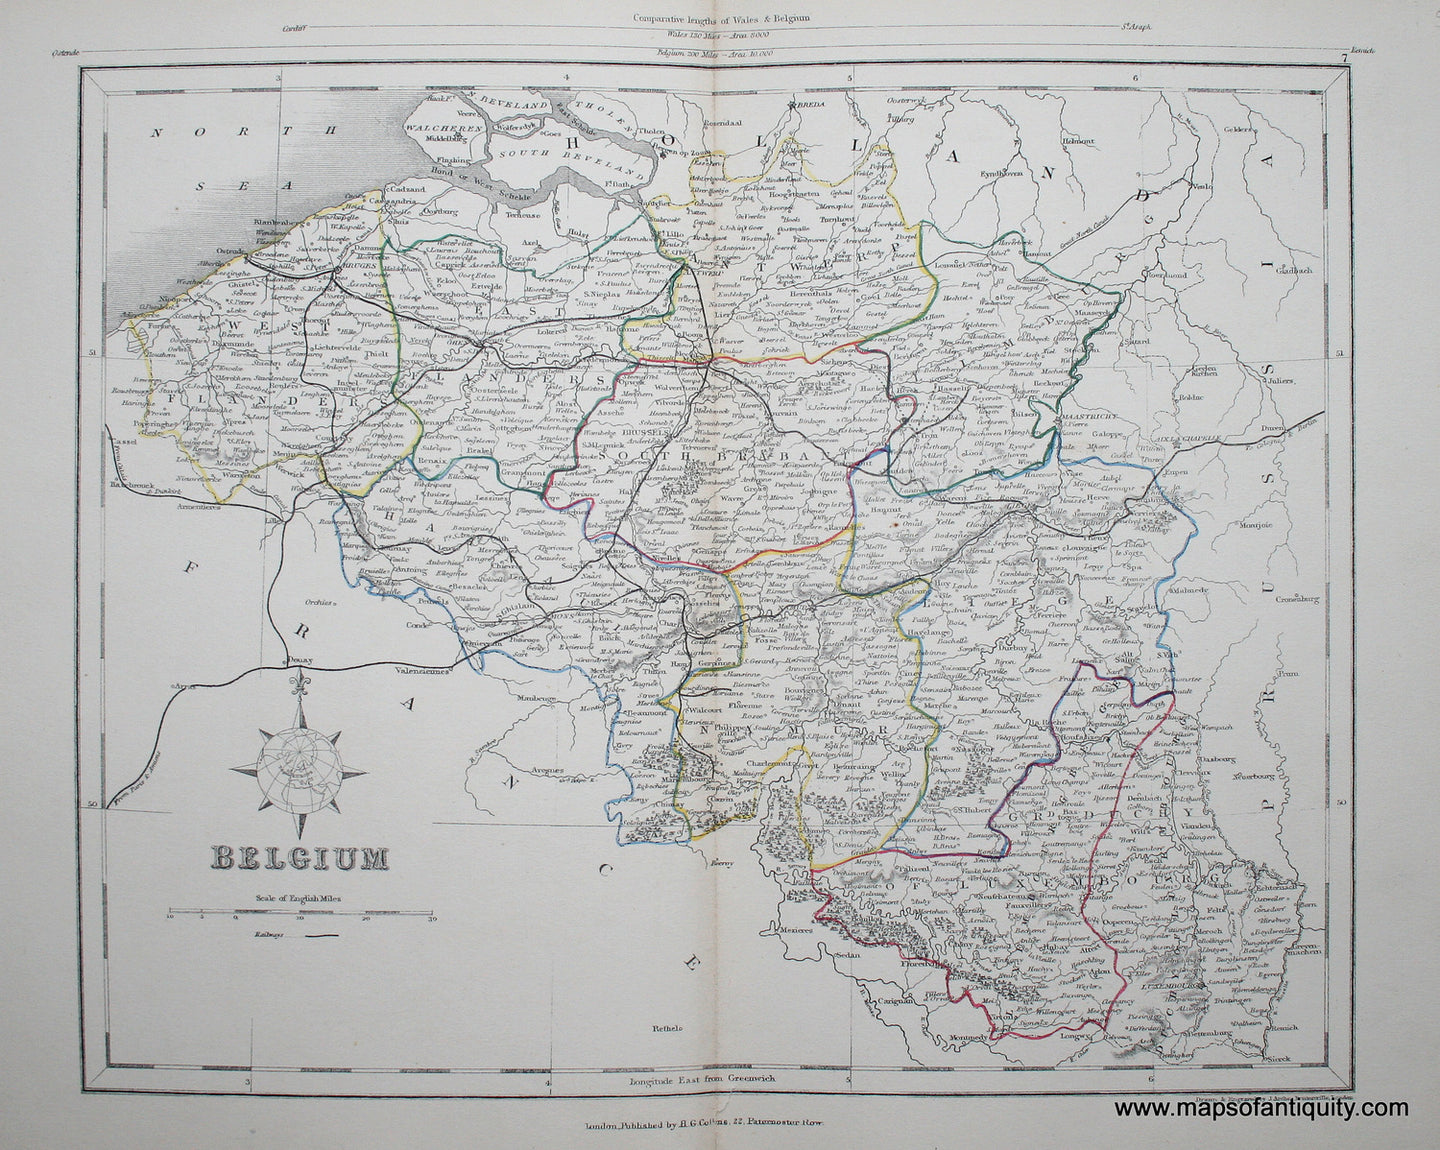 Antique-Hand-Colored-Map-Belgium-Europe-Belgium-c.-1850-Appleton-Maps-Of-Antiquity